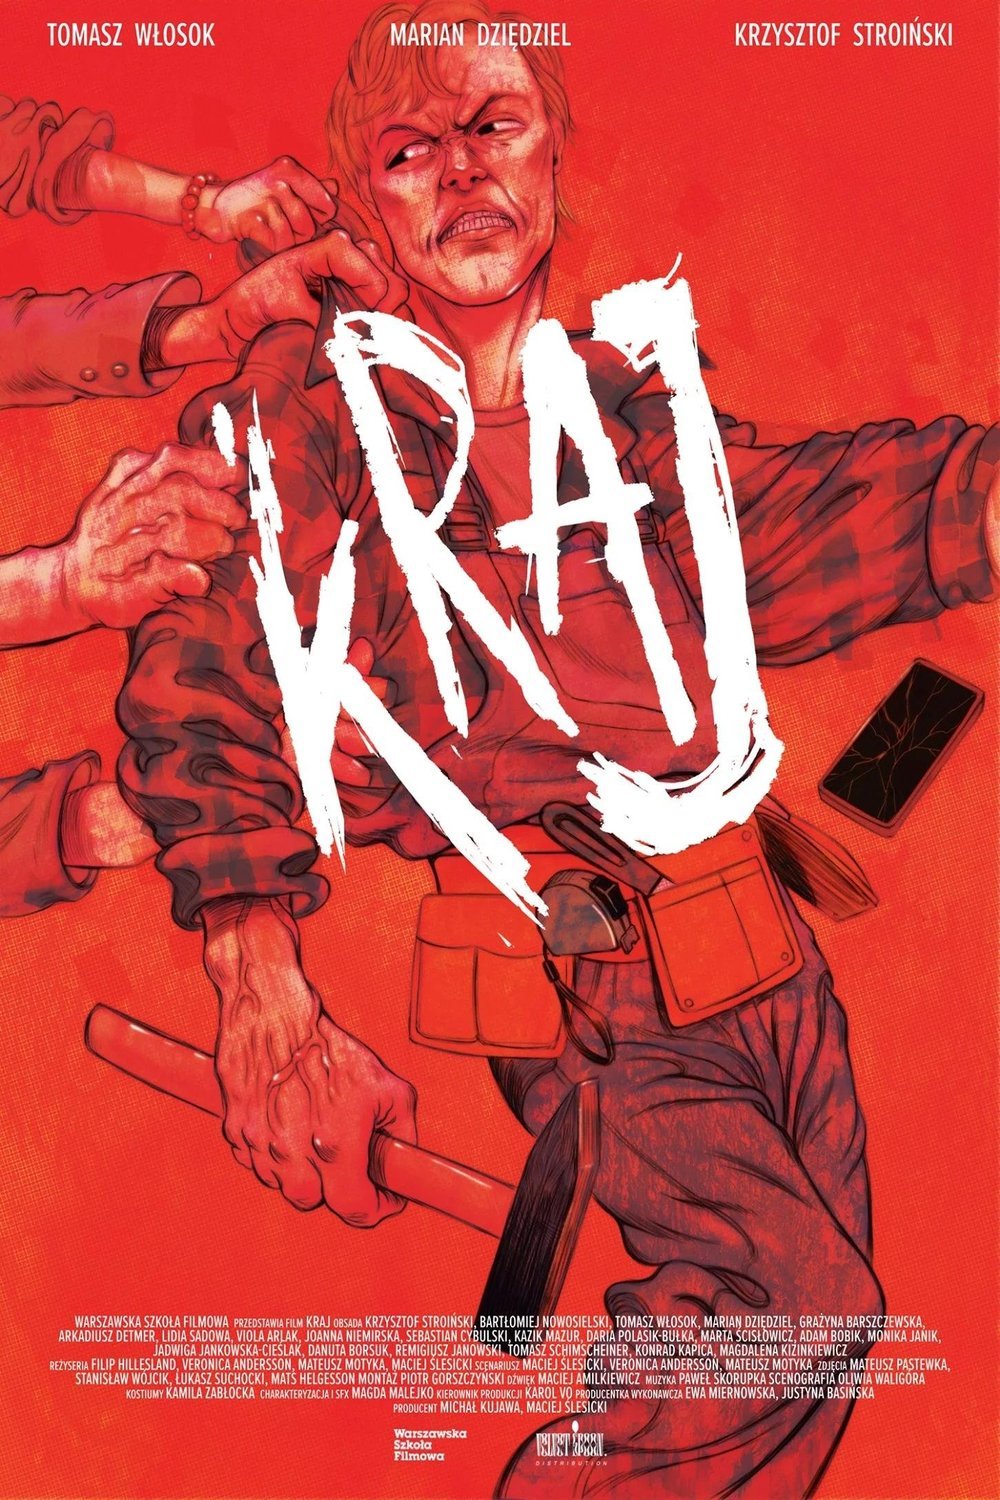 L'affiche originale du film Kraj en polonais